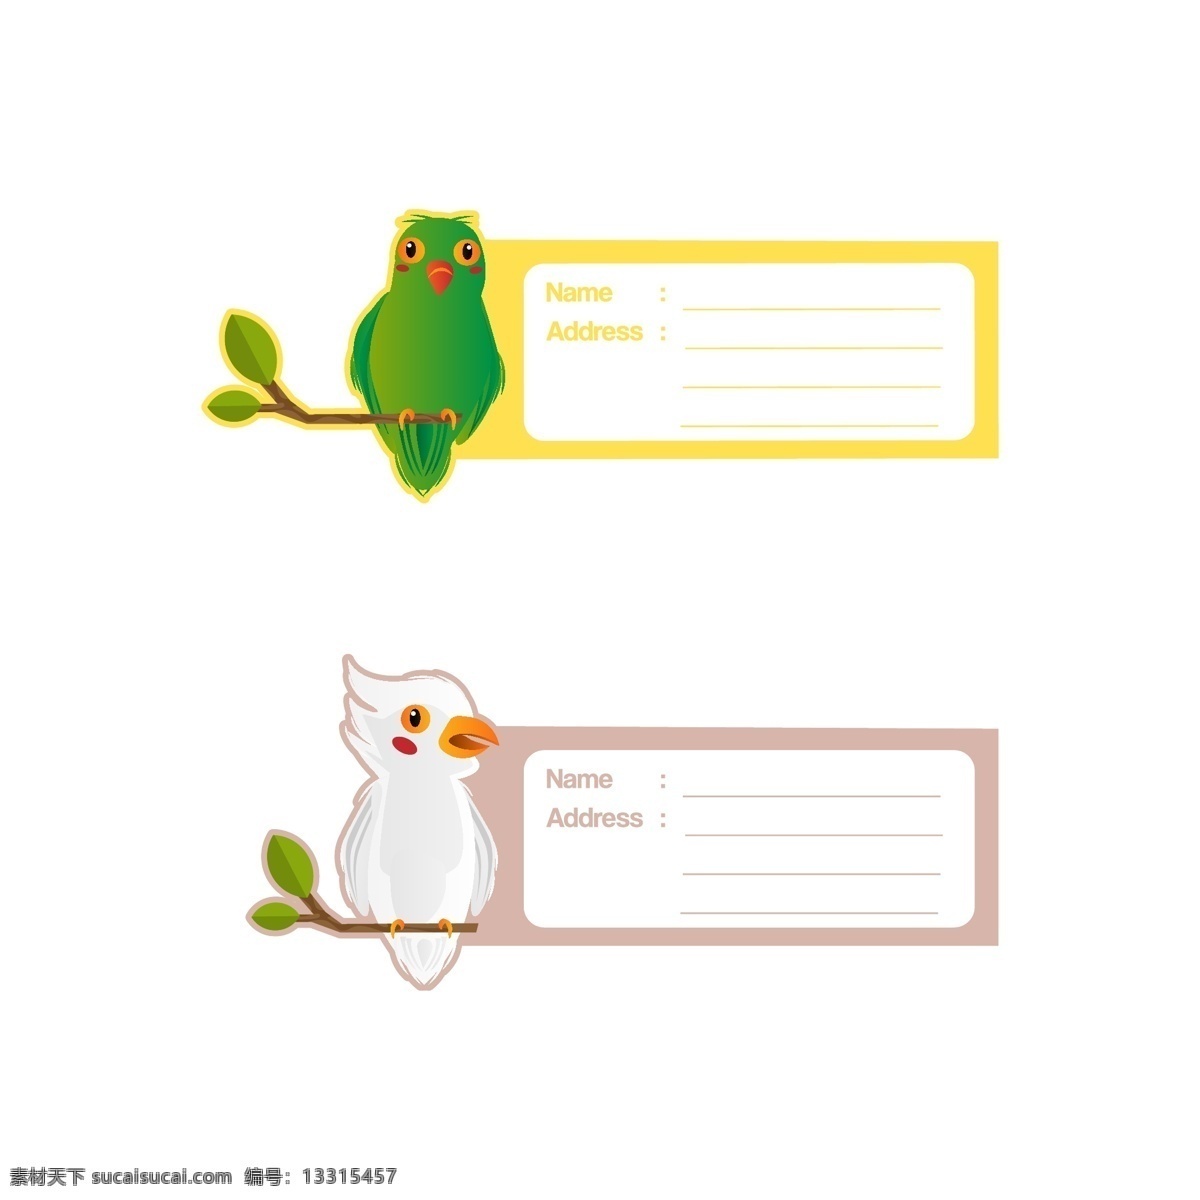 卡通 动物 卡片 卡通动物卡片 手绘 可爱 动物素材 小鸟 卡通动物生物 卡通设计